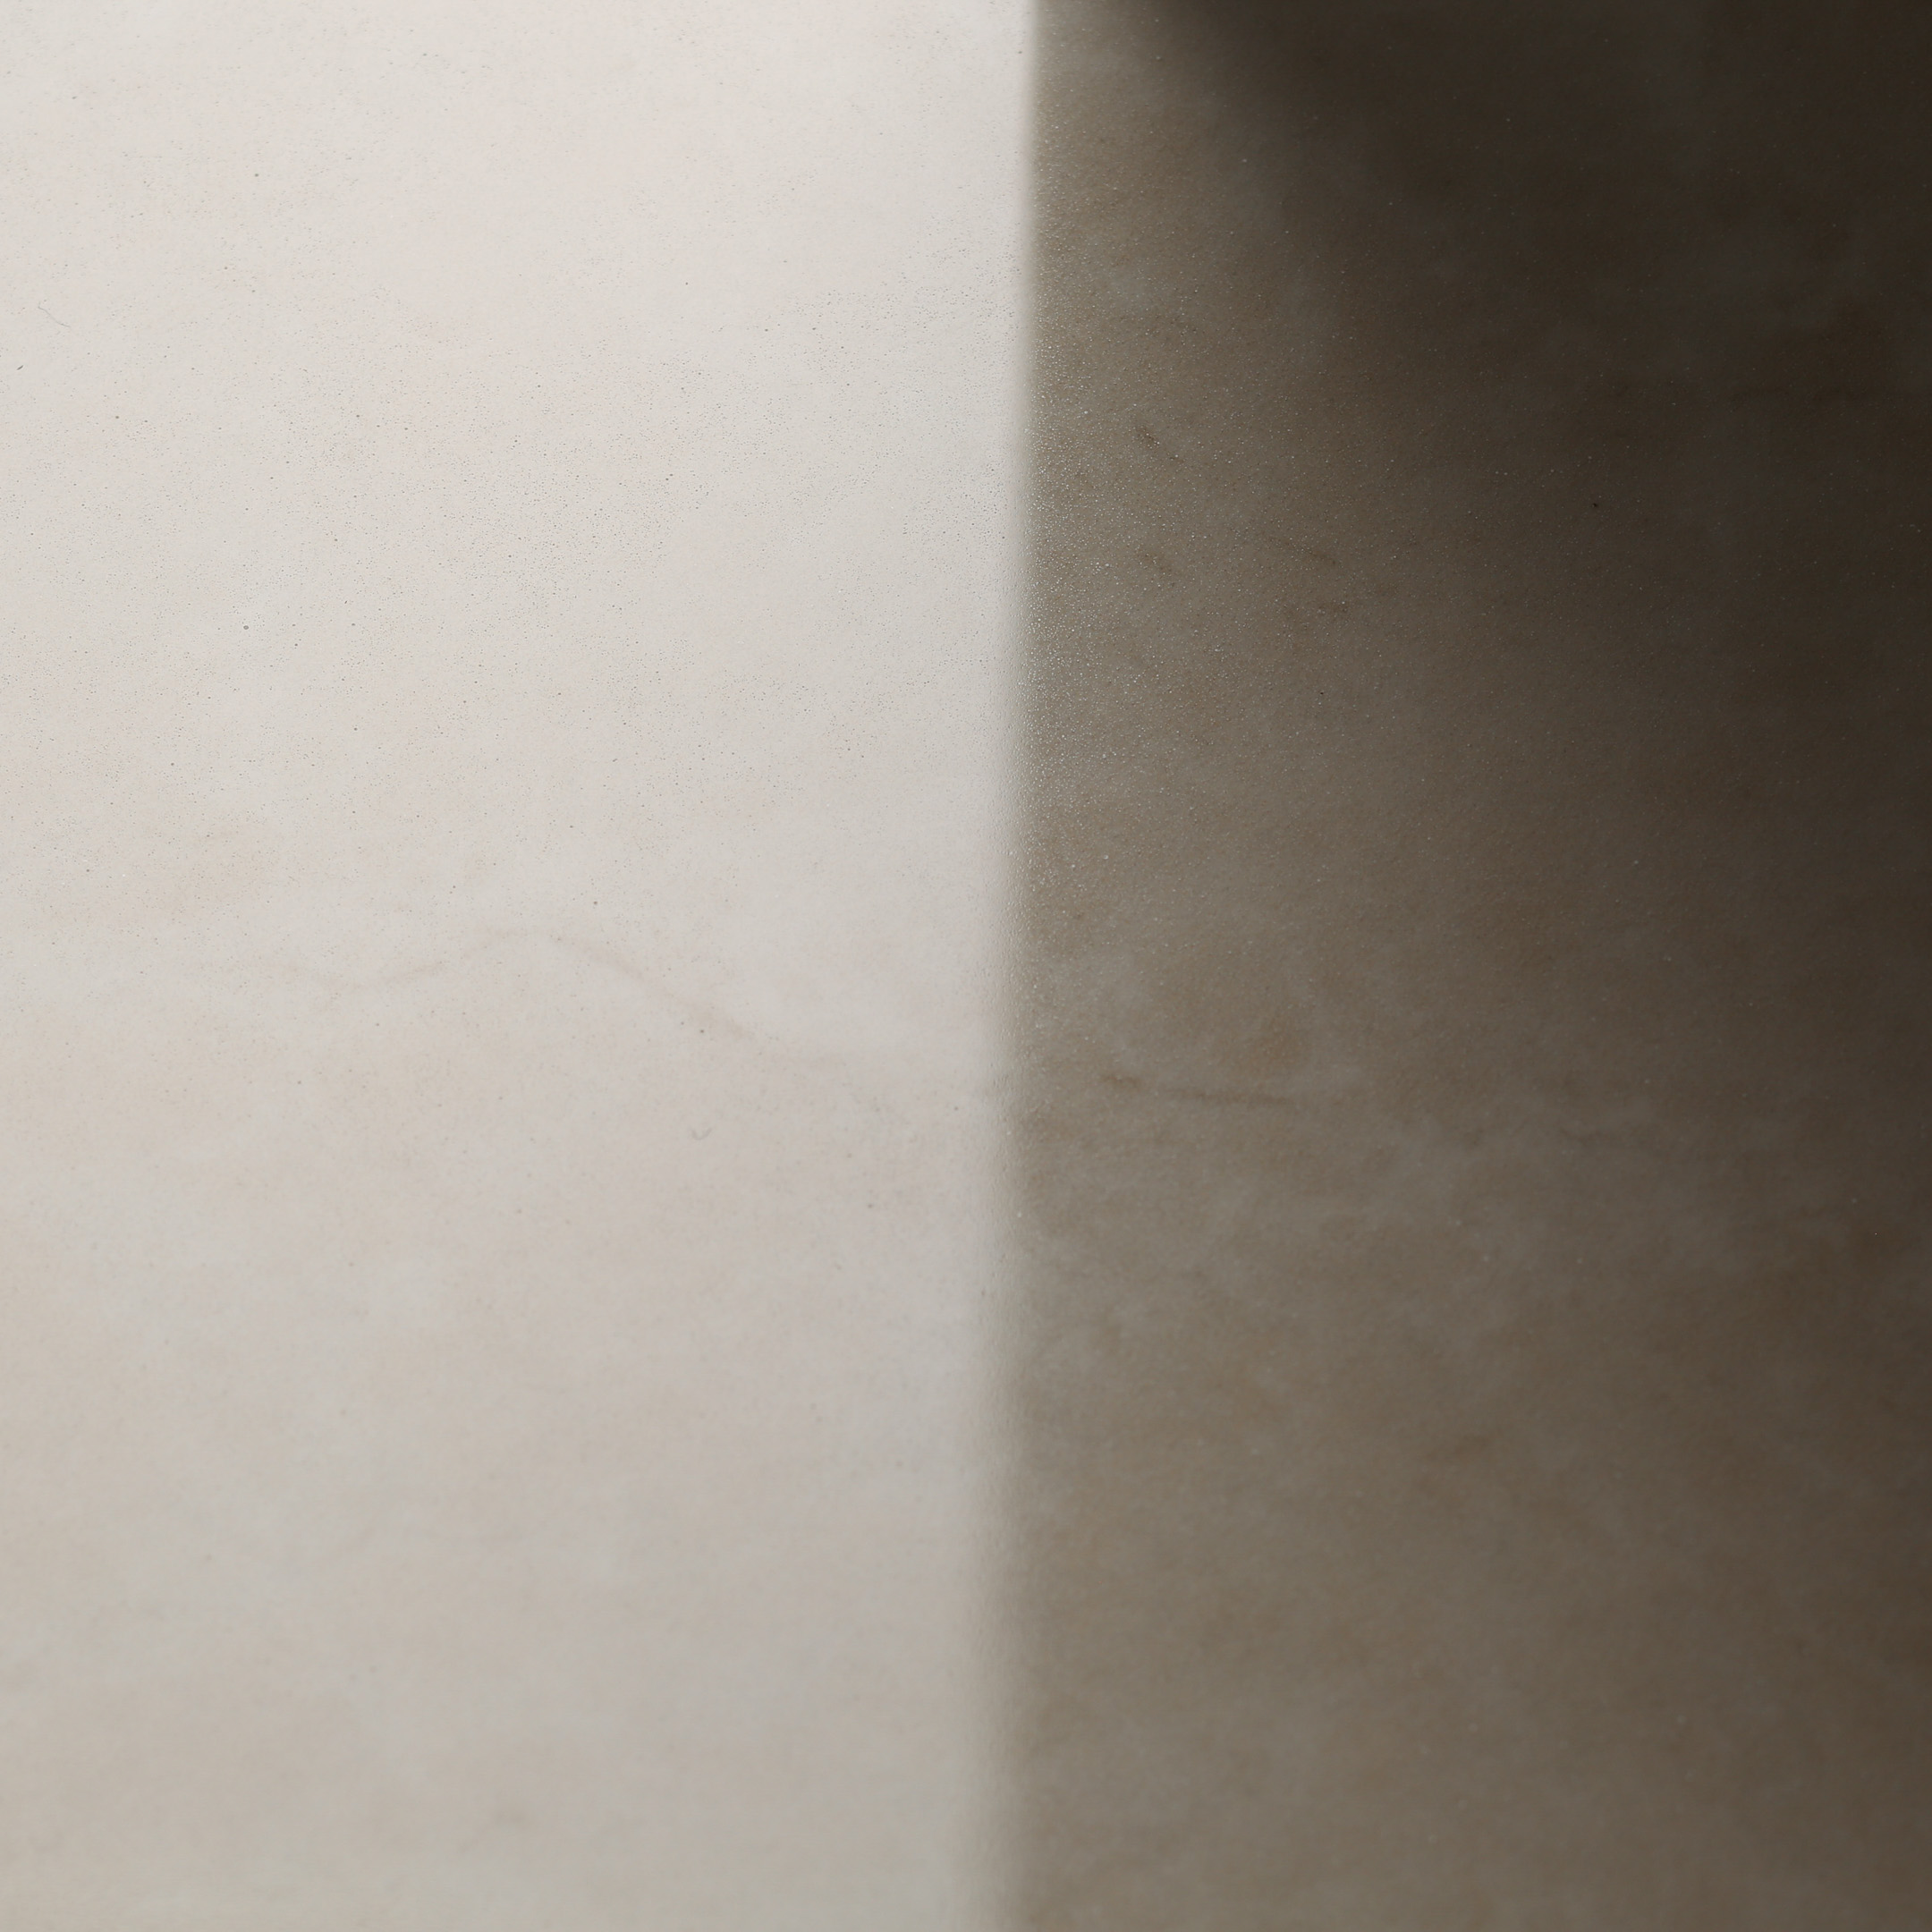 фото Керамогранит уг гранитея синара светло-серый g311 полированный 600х600х10 мм (4 шт.=1,44 кв.м) уральский гранит